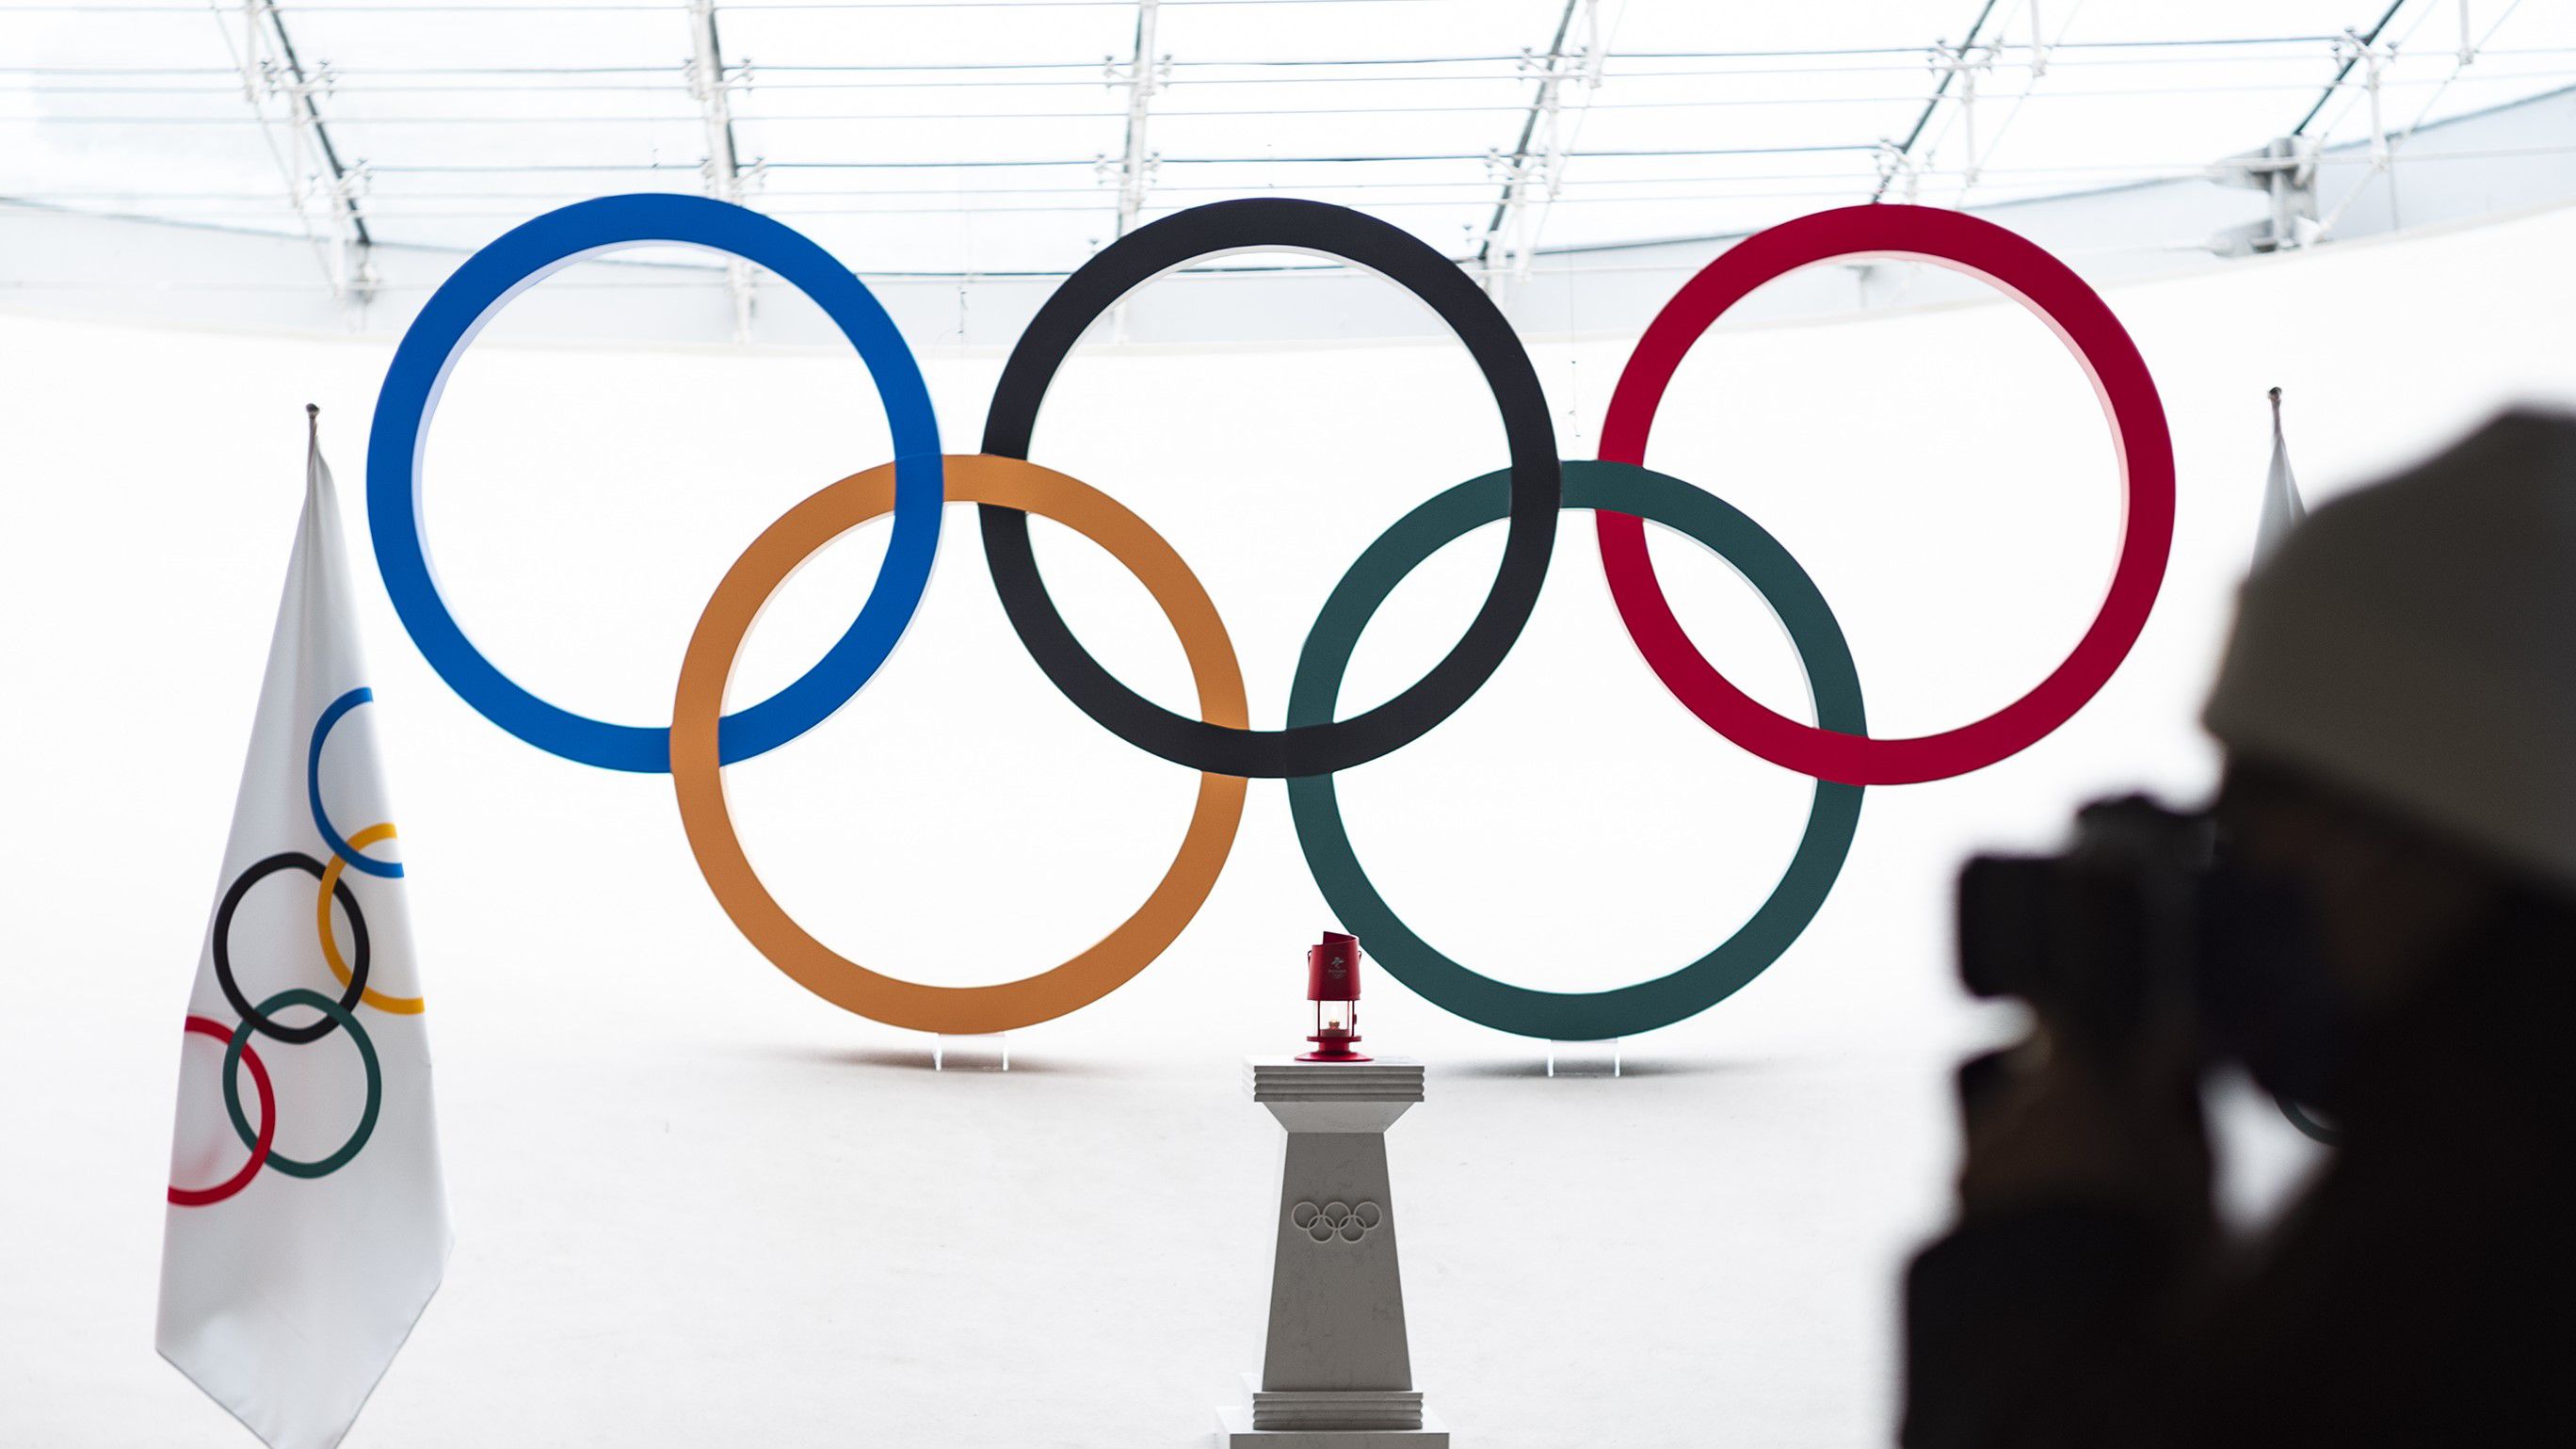 Ezt az öt sportágat akarják a szervezők a 2028-as olimpia programjába